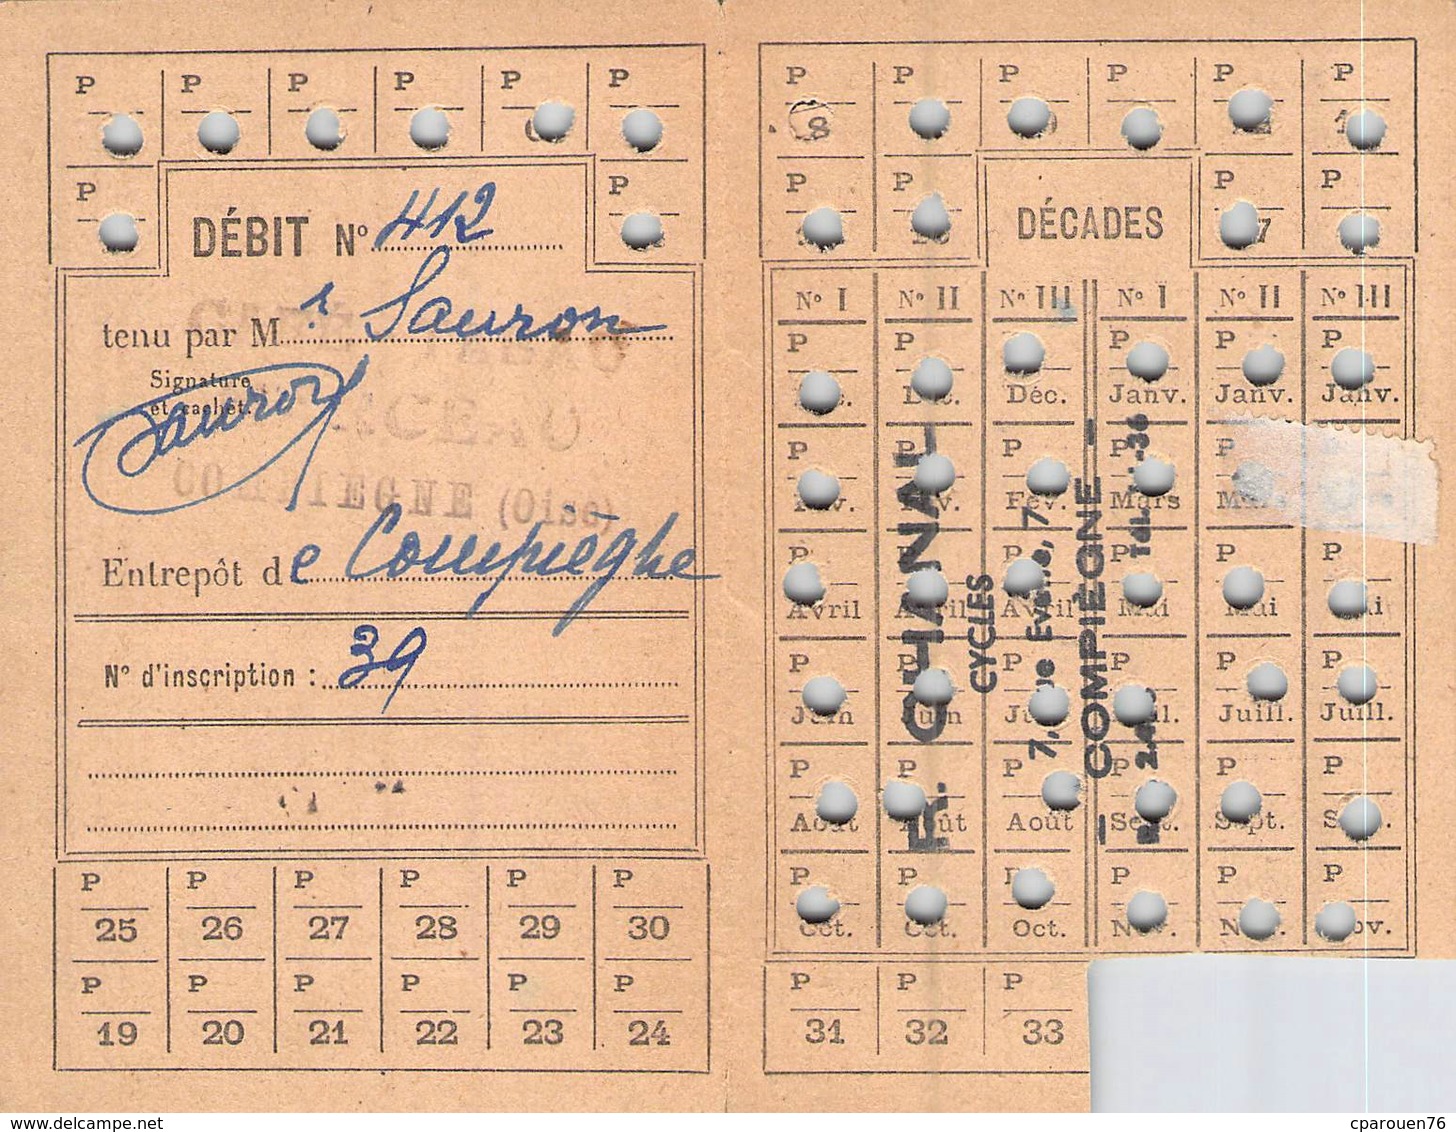 lot cartes de tabac Compiègne Oise 1946 1947  timbre fiscal contribution